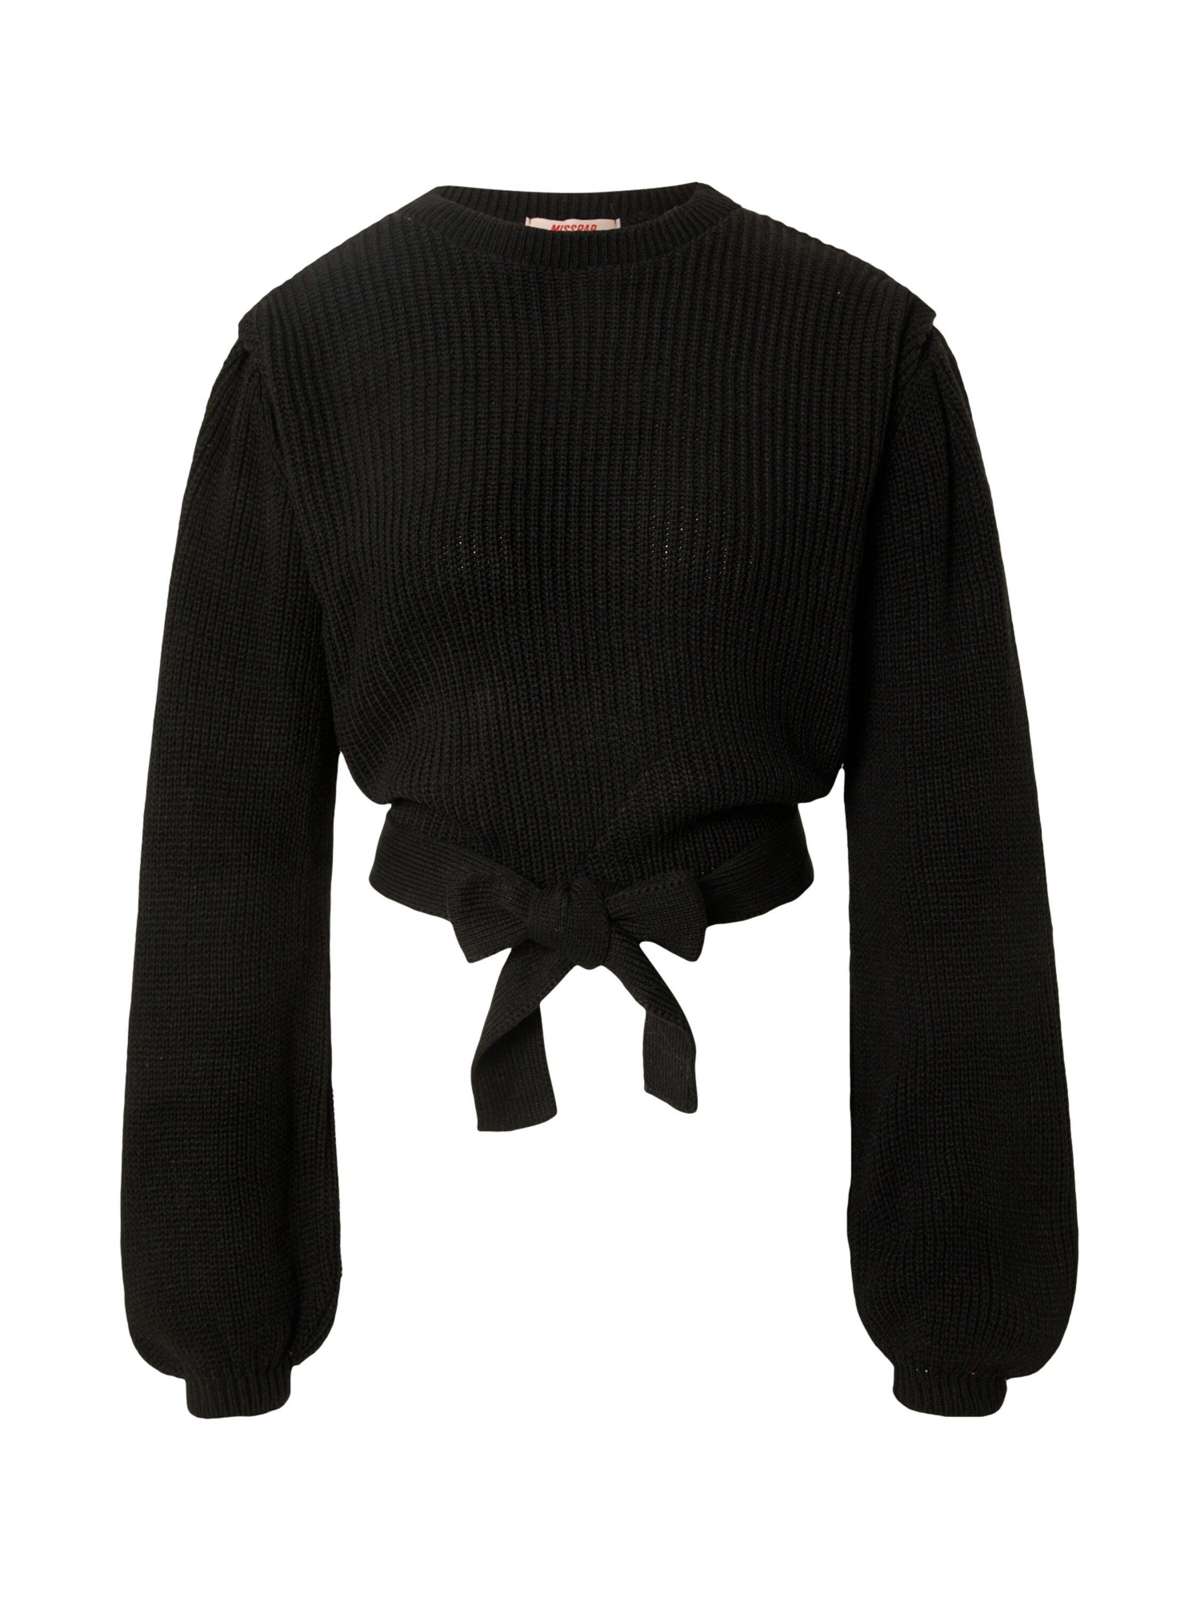 Вязаный свитер (1 шт.) Подробнее